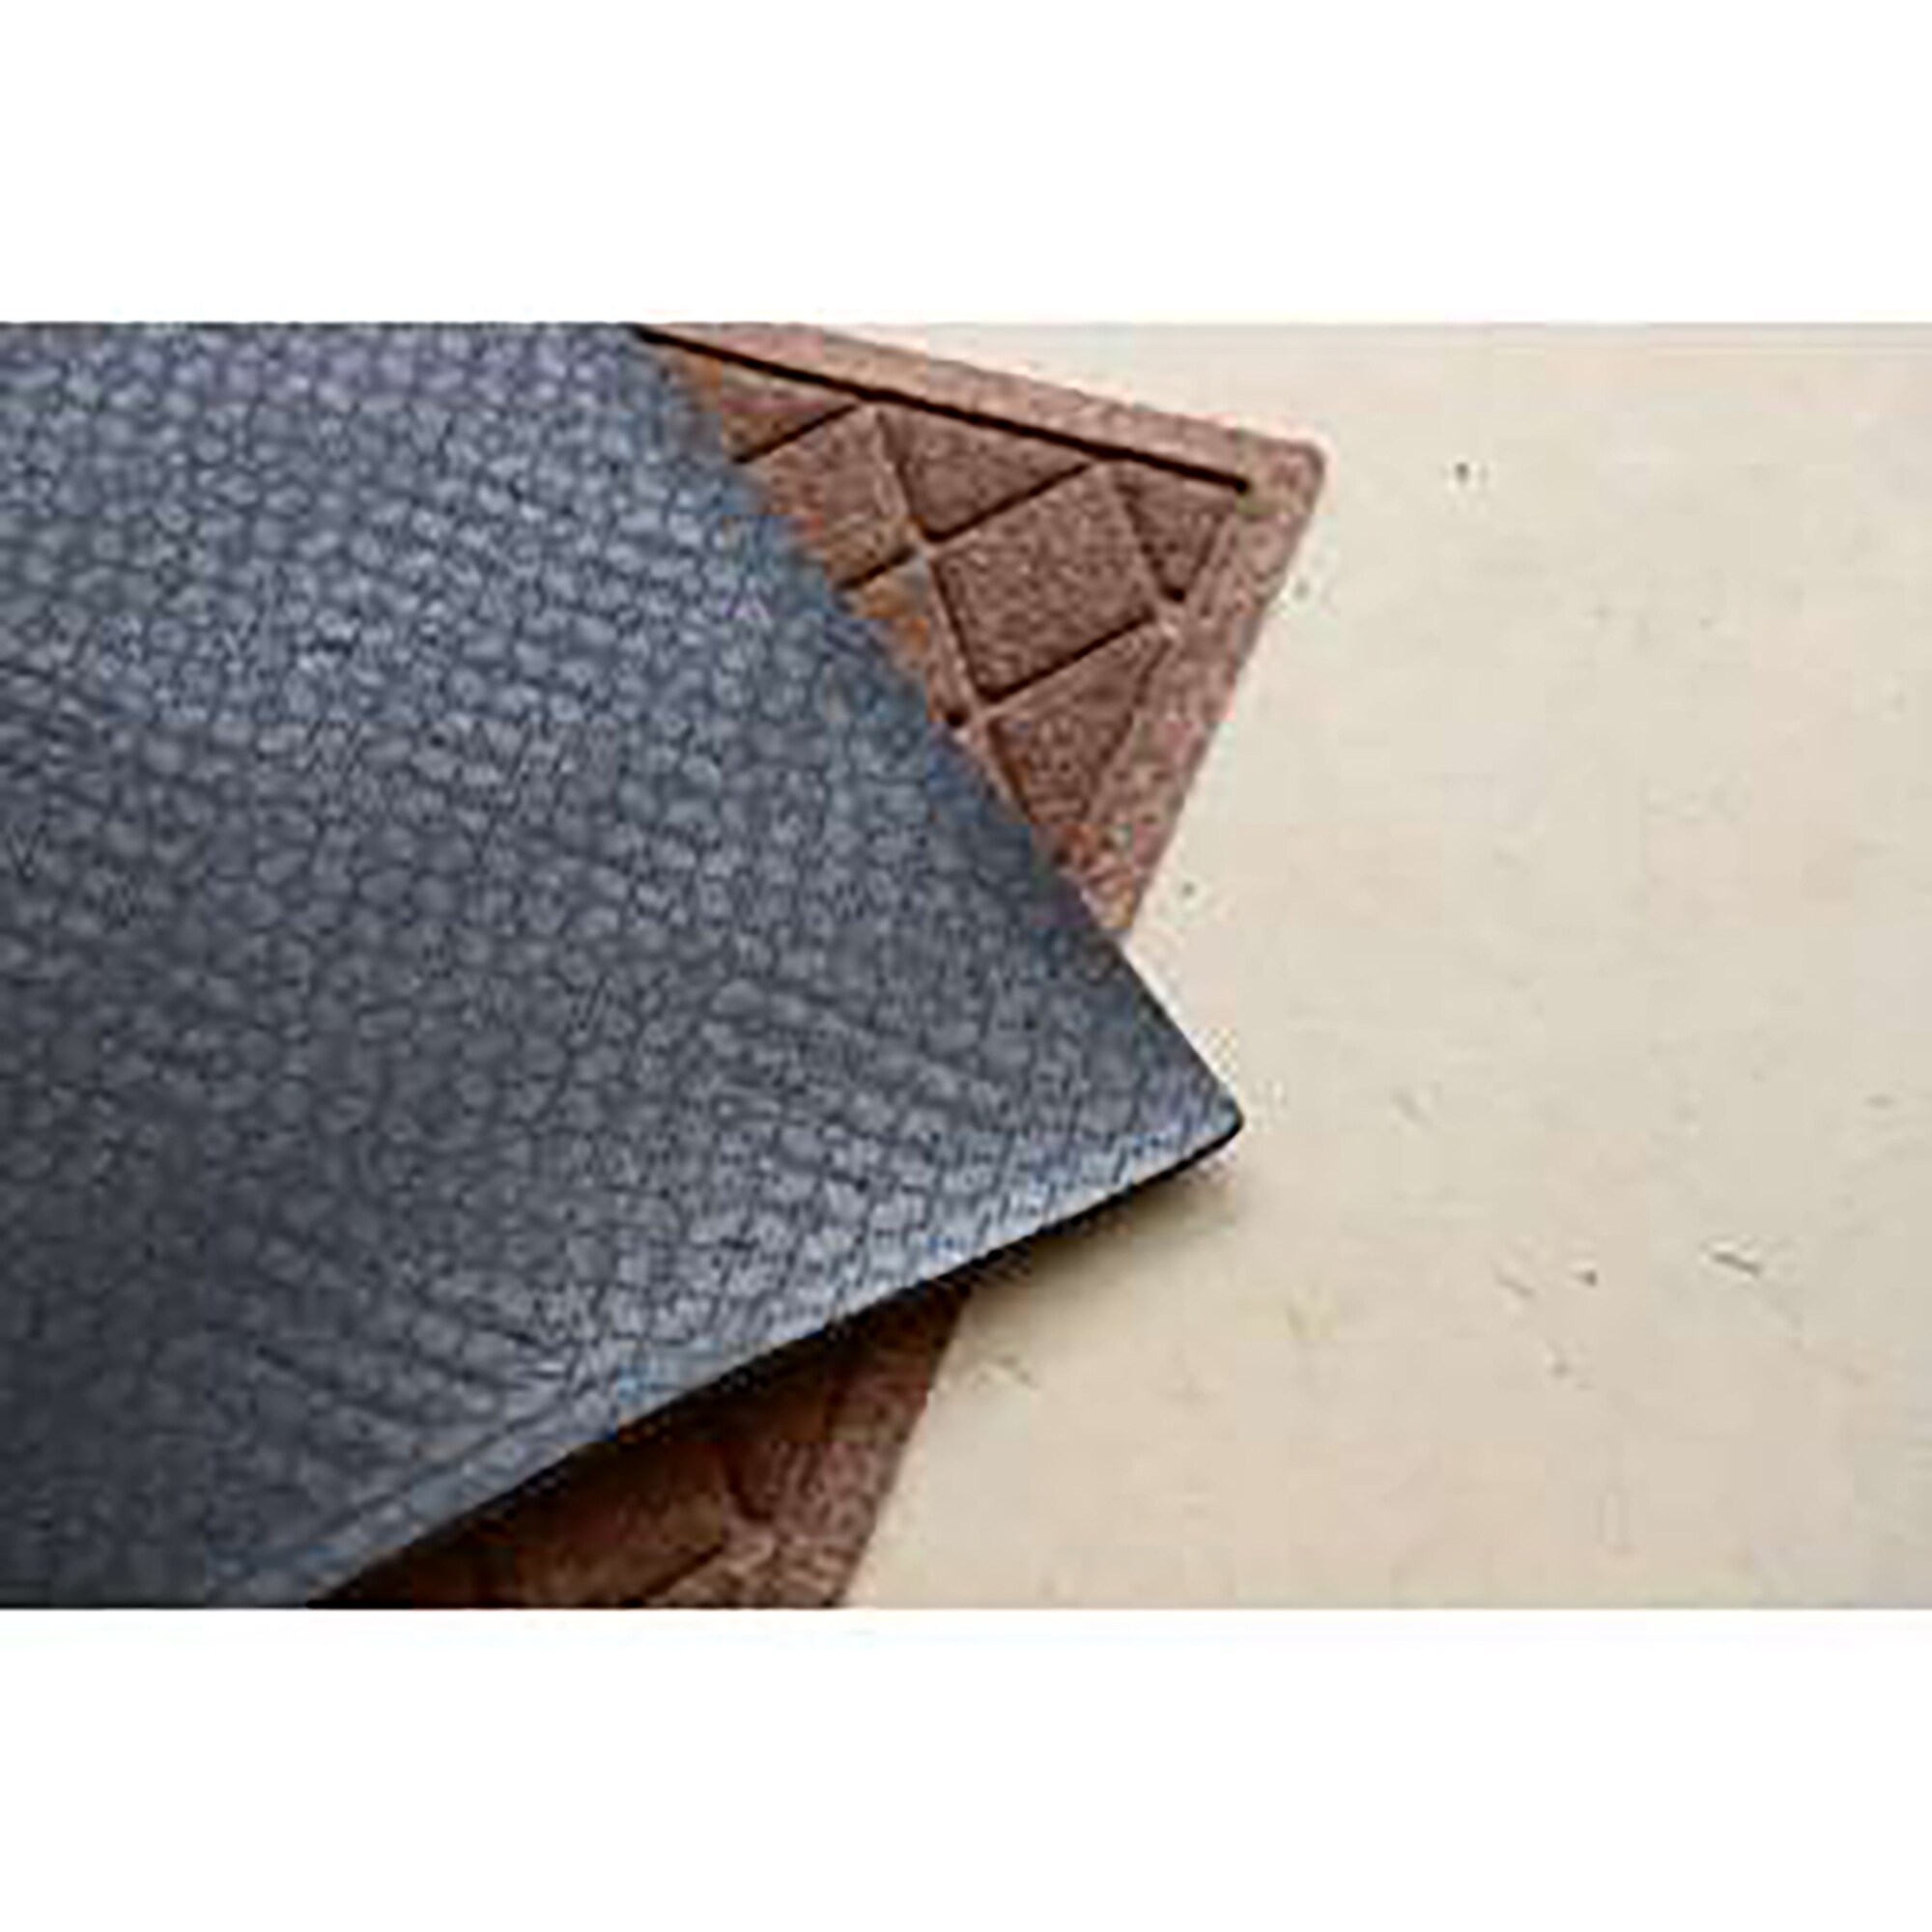 Waterhog Indoor/Outdoor Geometric Doormat, 2' x 3' - Dark Brown